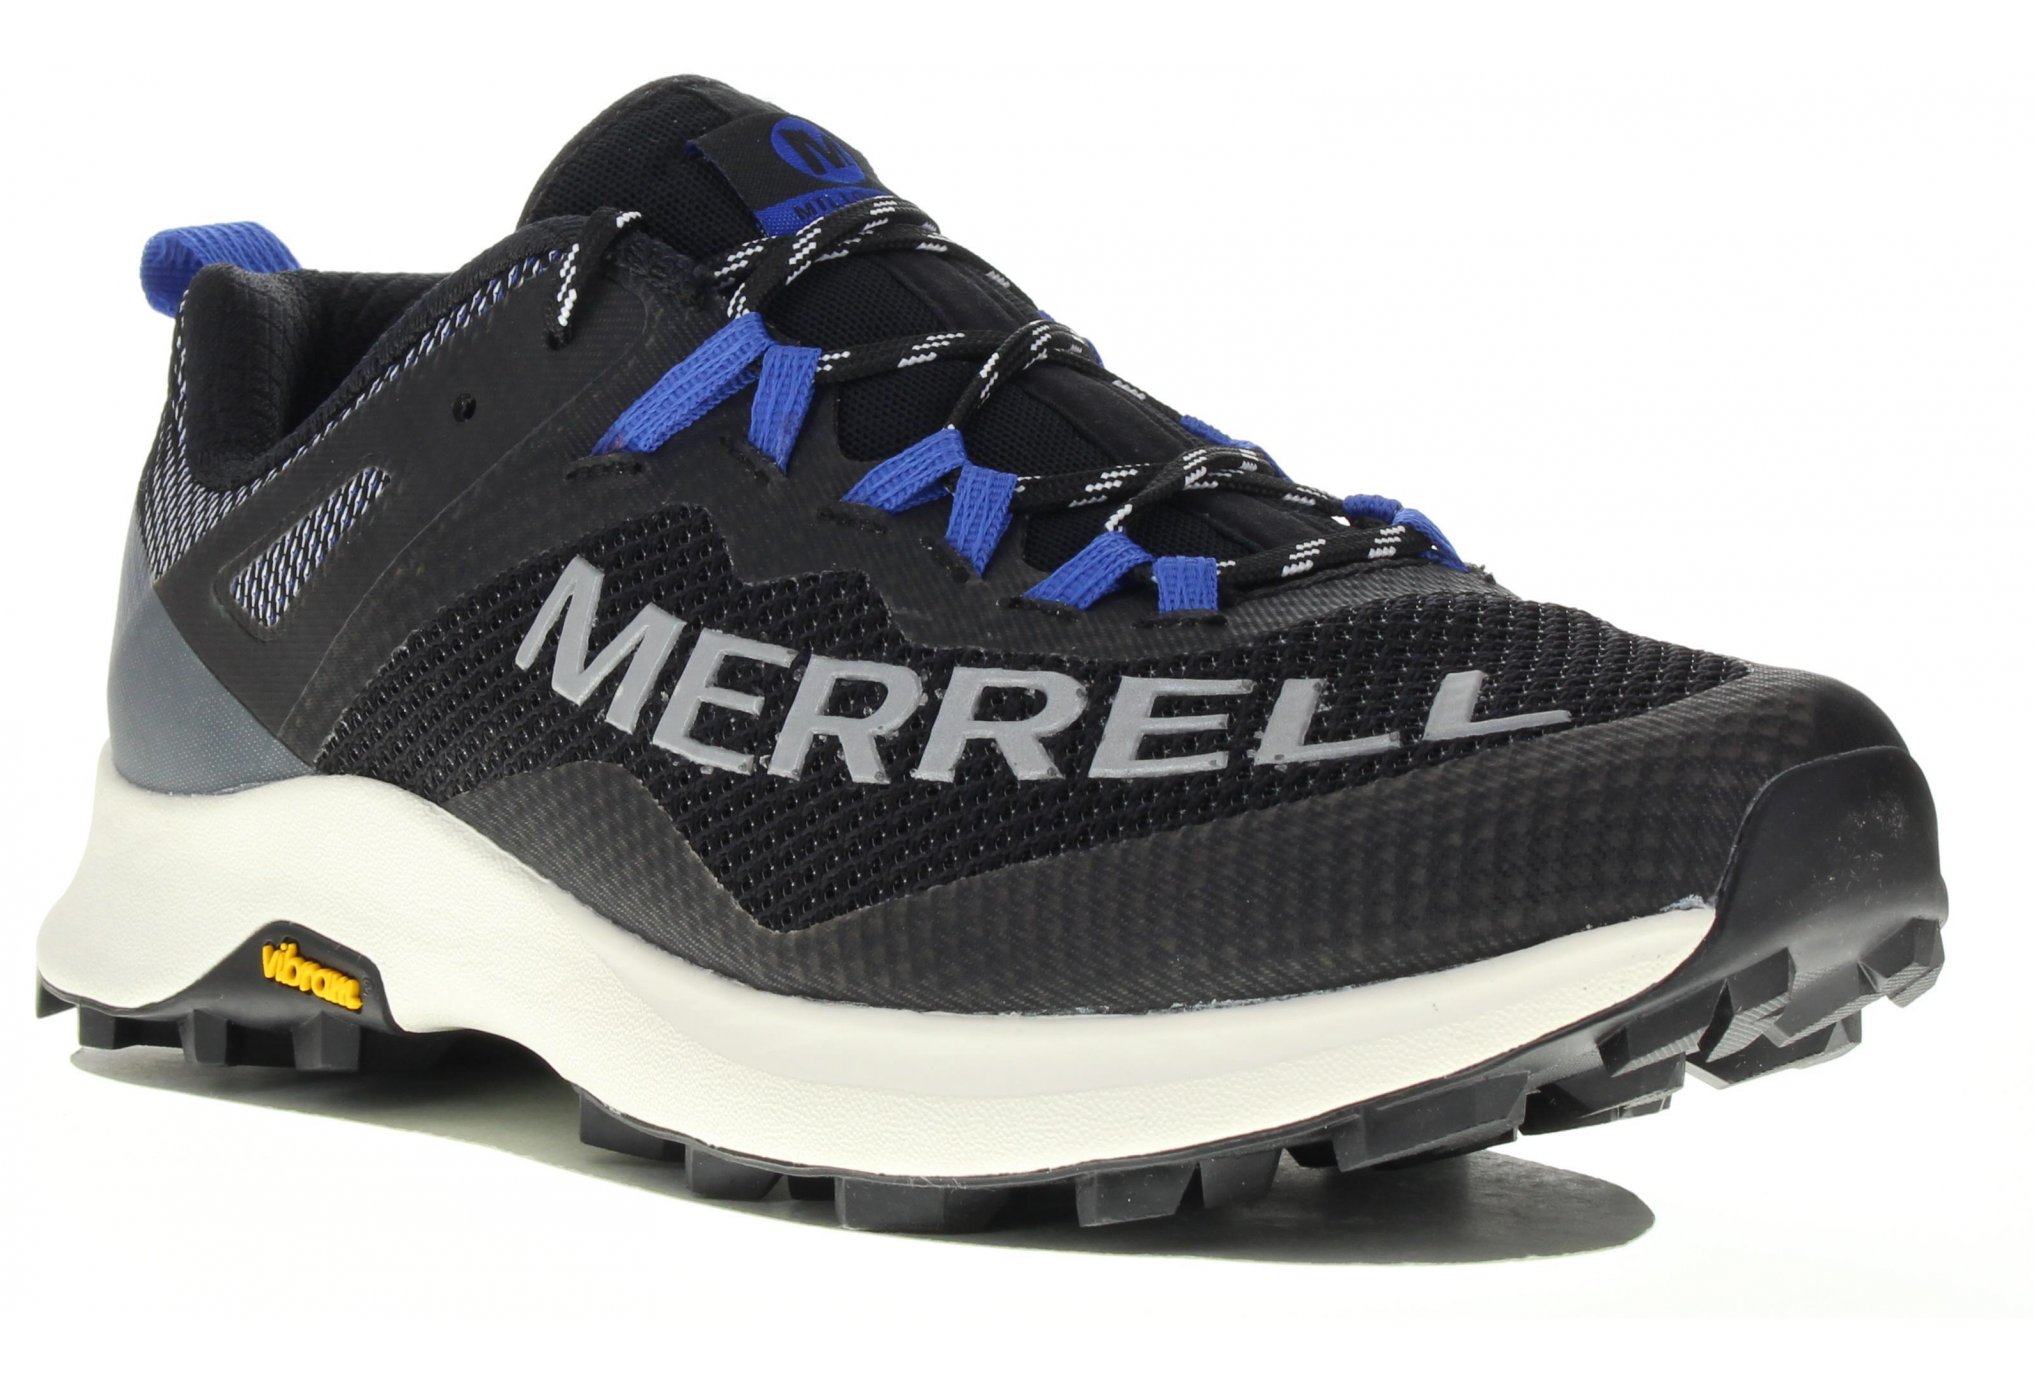 Merrell MTL Long Sky W Diététique Chaussures femme